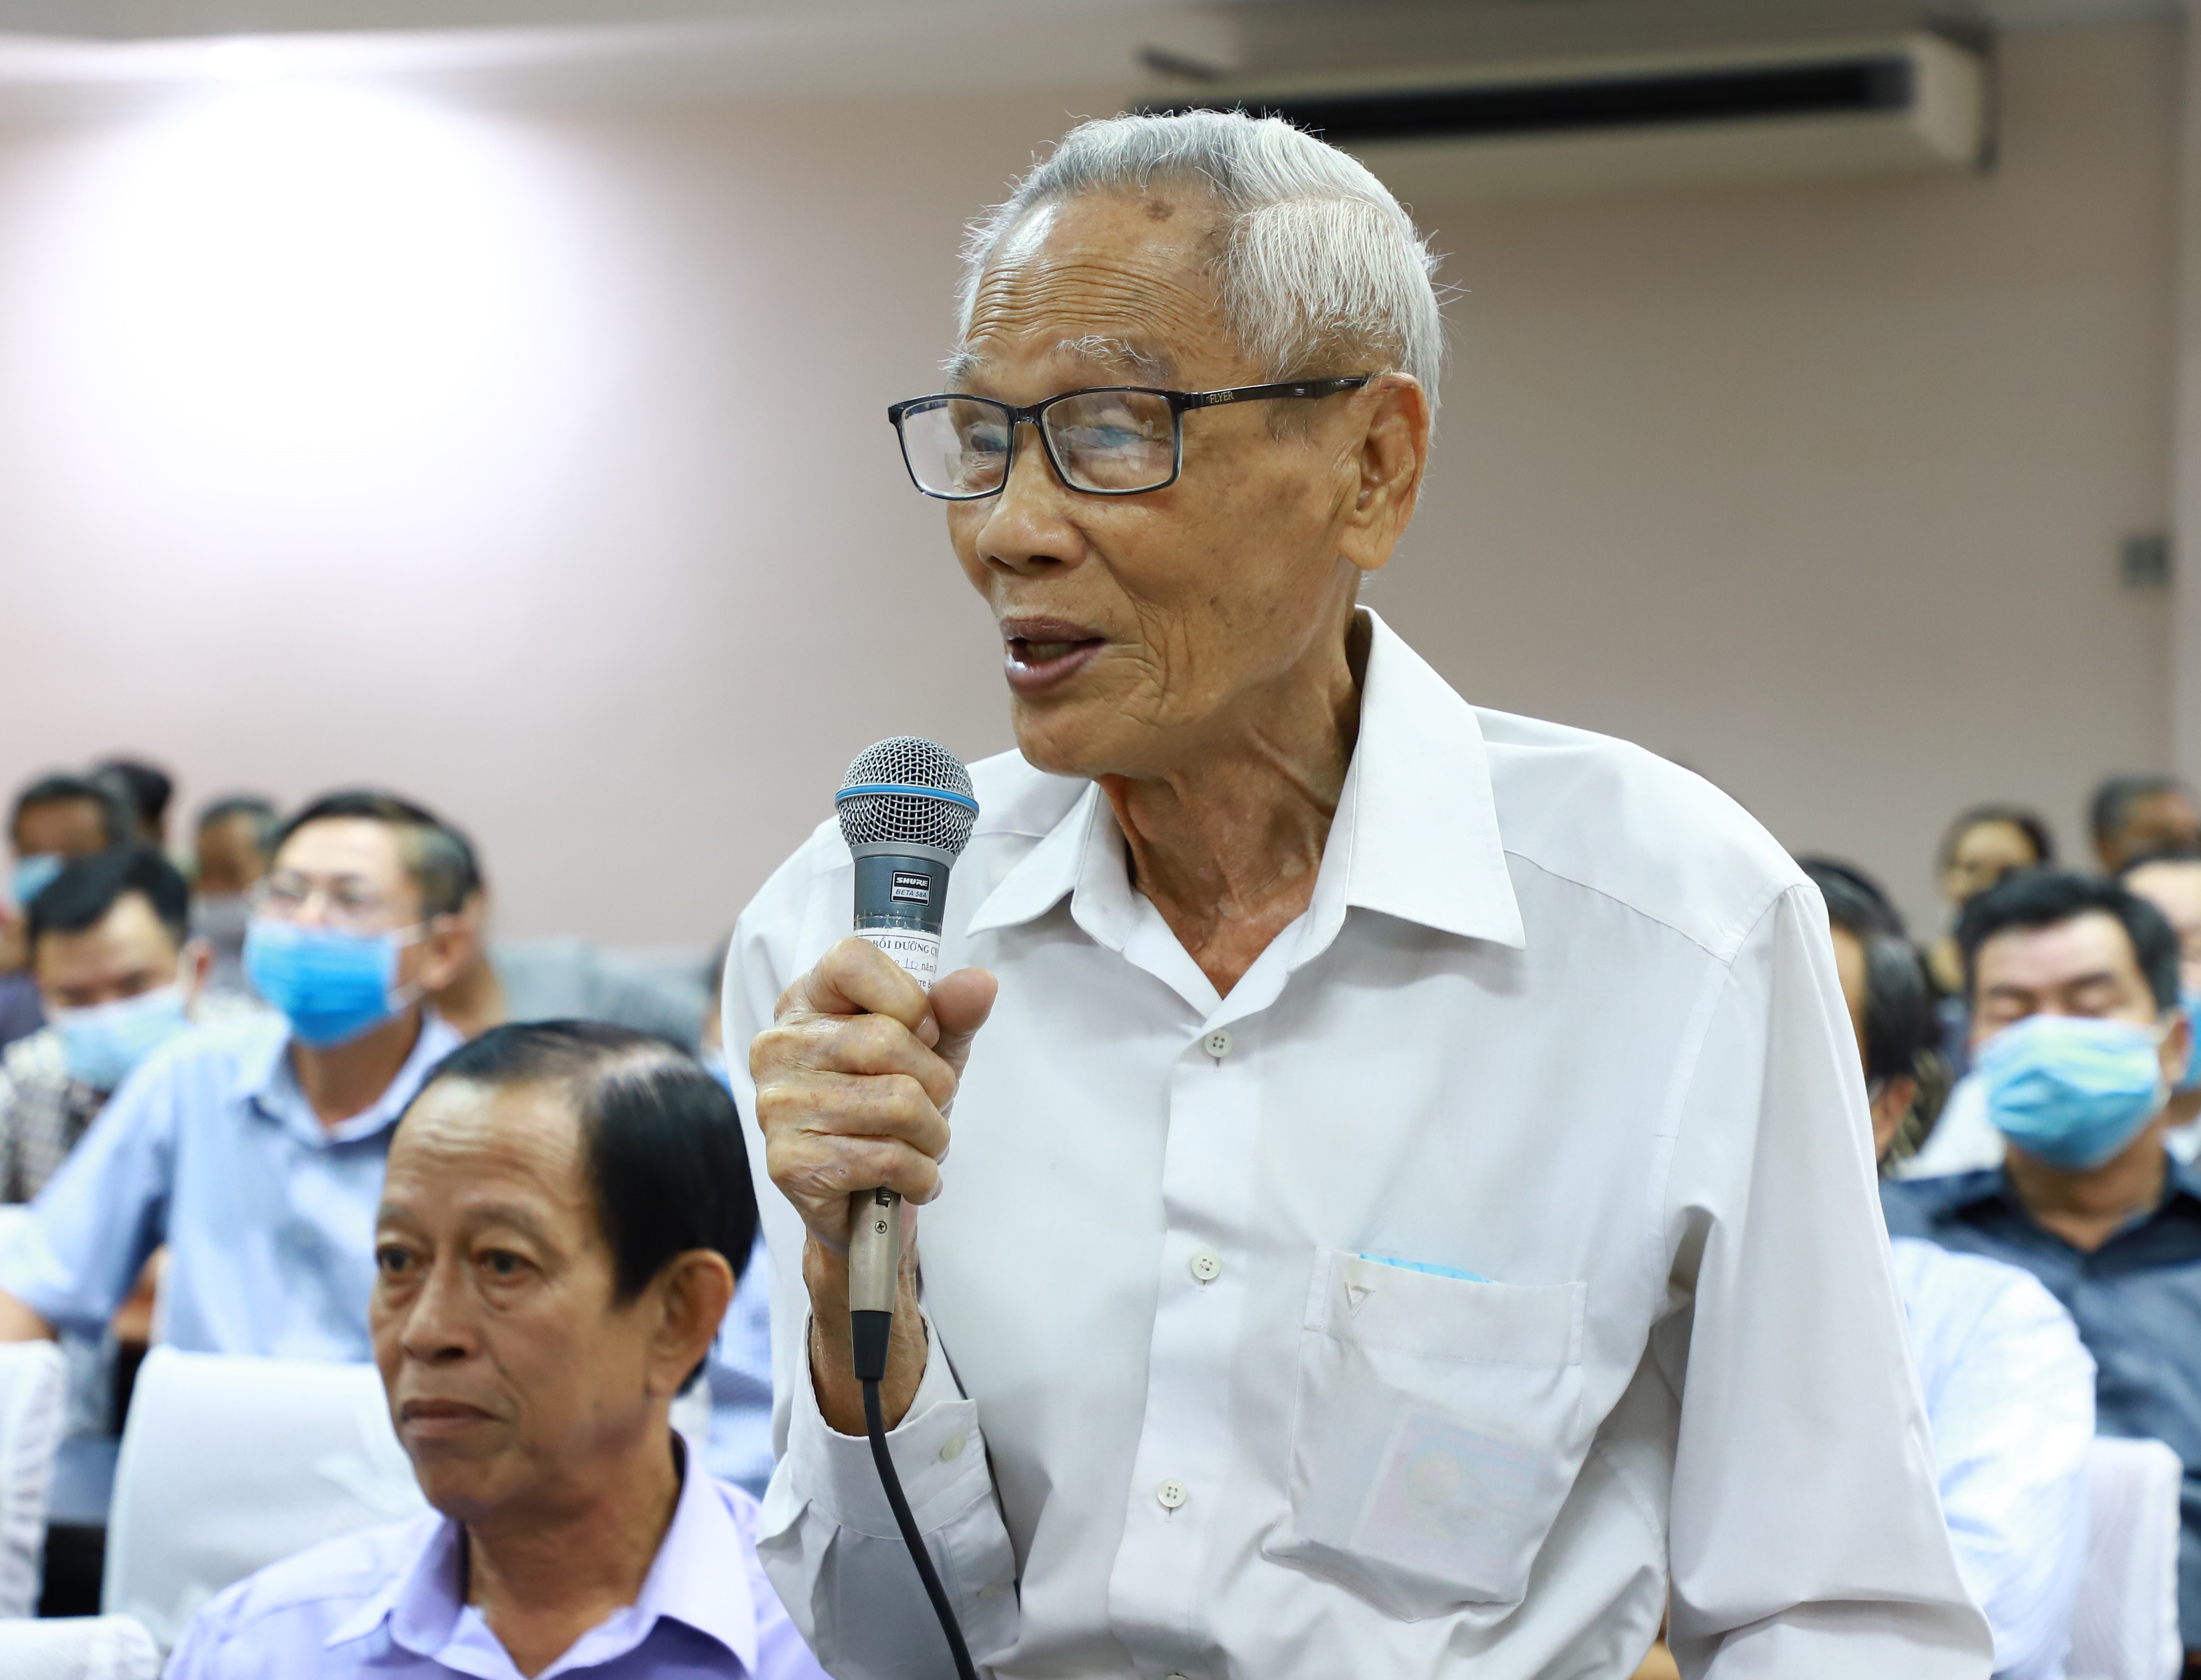 Cử tri Huỳnh Công Tấn phát biểu nhận xét tại hội nghị